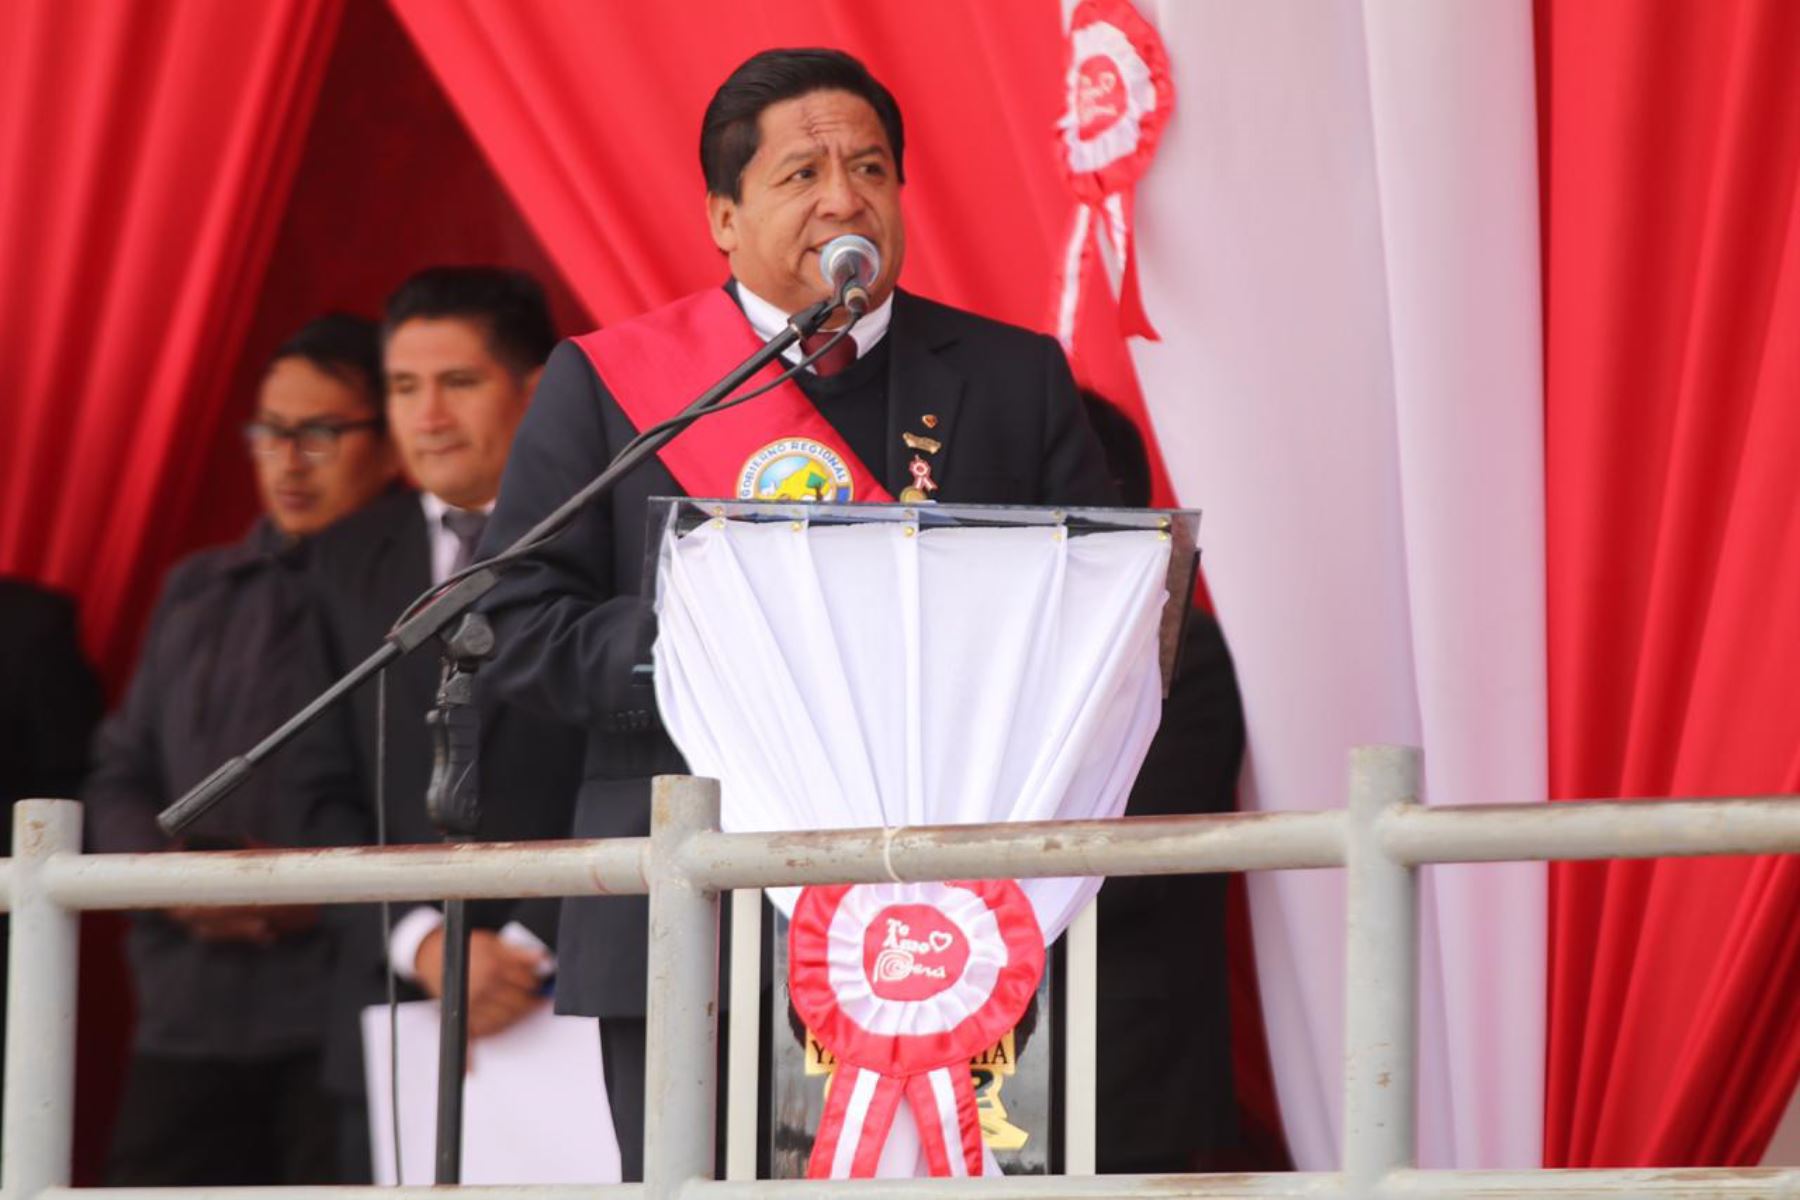 El gobernador regional de Pasco, Pedro Ubaldo Polinar, saludó la propuesta de adelantar las elecciones generales a julio del 2020.